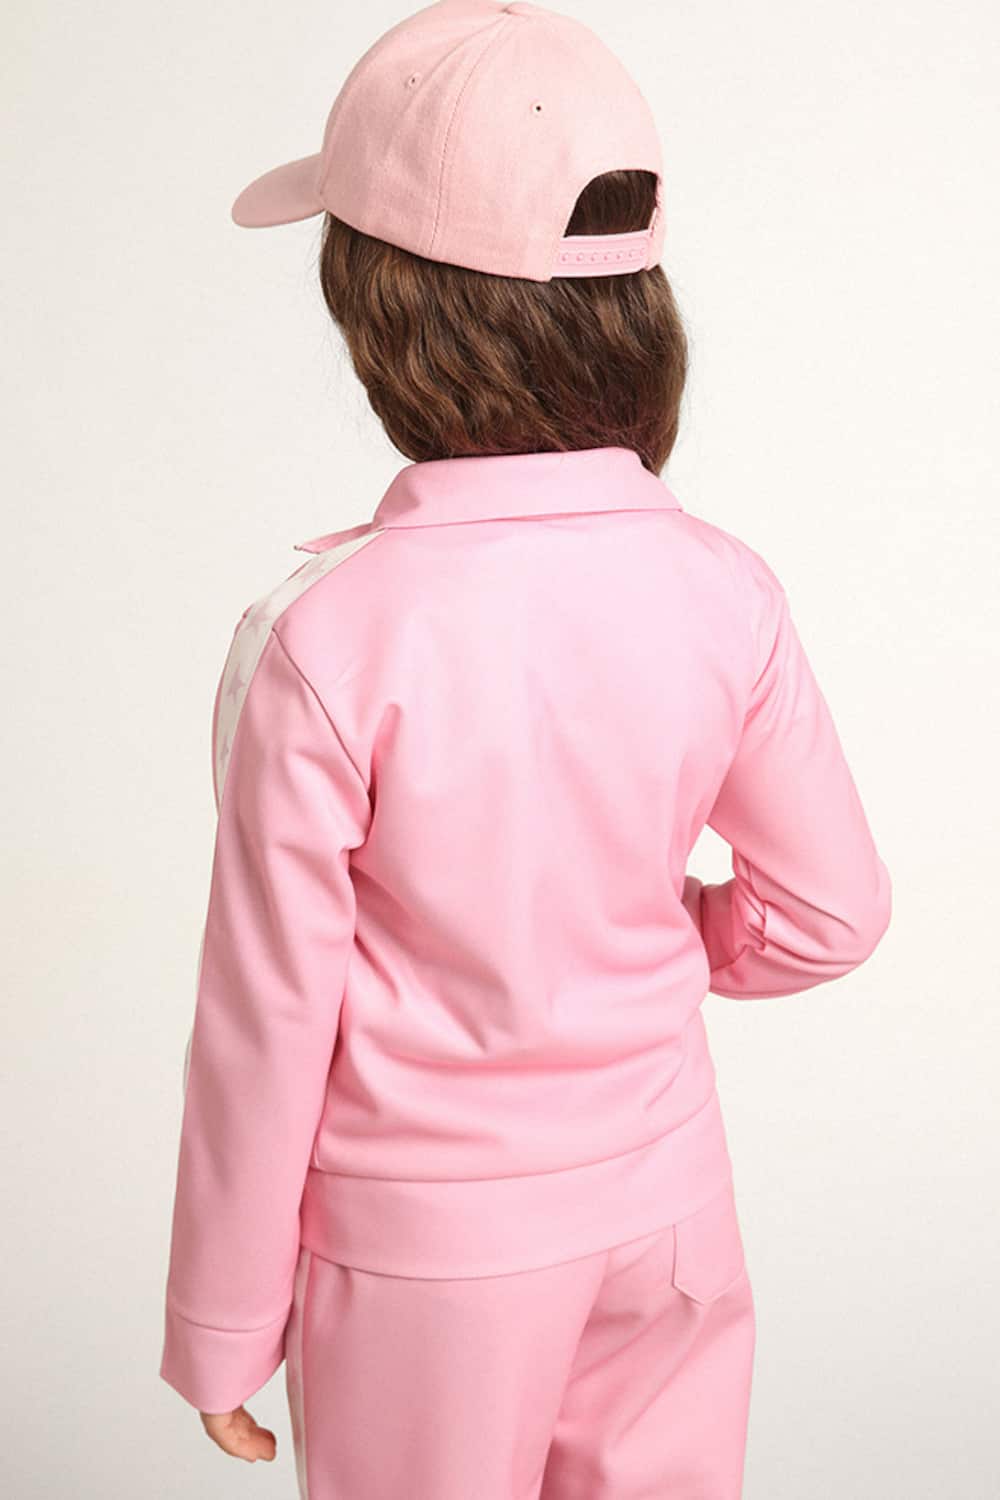 Golden Goose - Sweat-shirt rose avec fermeture à glissière, bande blanche et étoiles roses in 